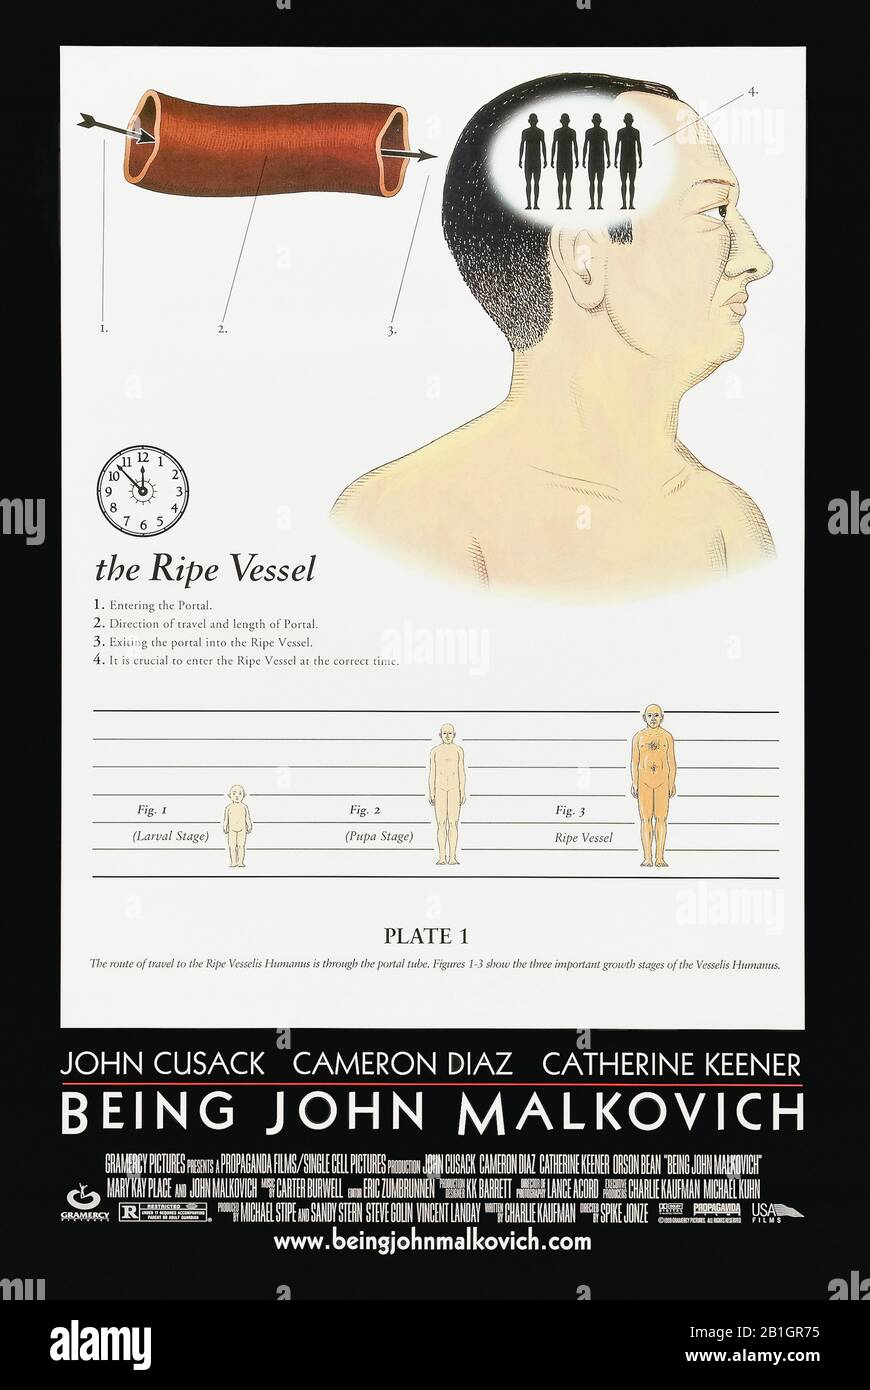 Als John Malkovich (1999) unter der Regie von Spike Jonze und mit John Cusack, Cameron Diaz, Catherine Keener und John Malkovich in den Hauptrollen. Schrullige Komödie, in der ein Puppenspieler ein Geheimportal in den Kopf von John Malkovich entdeckt. Stockfoto